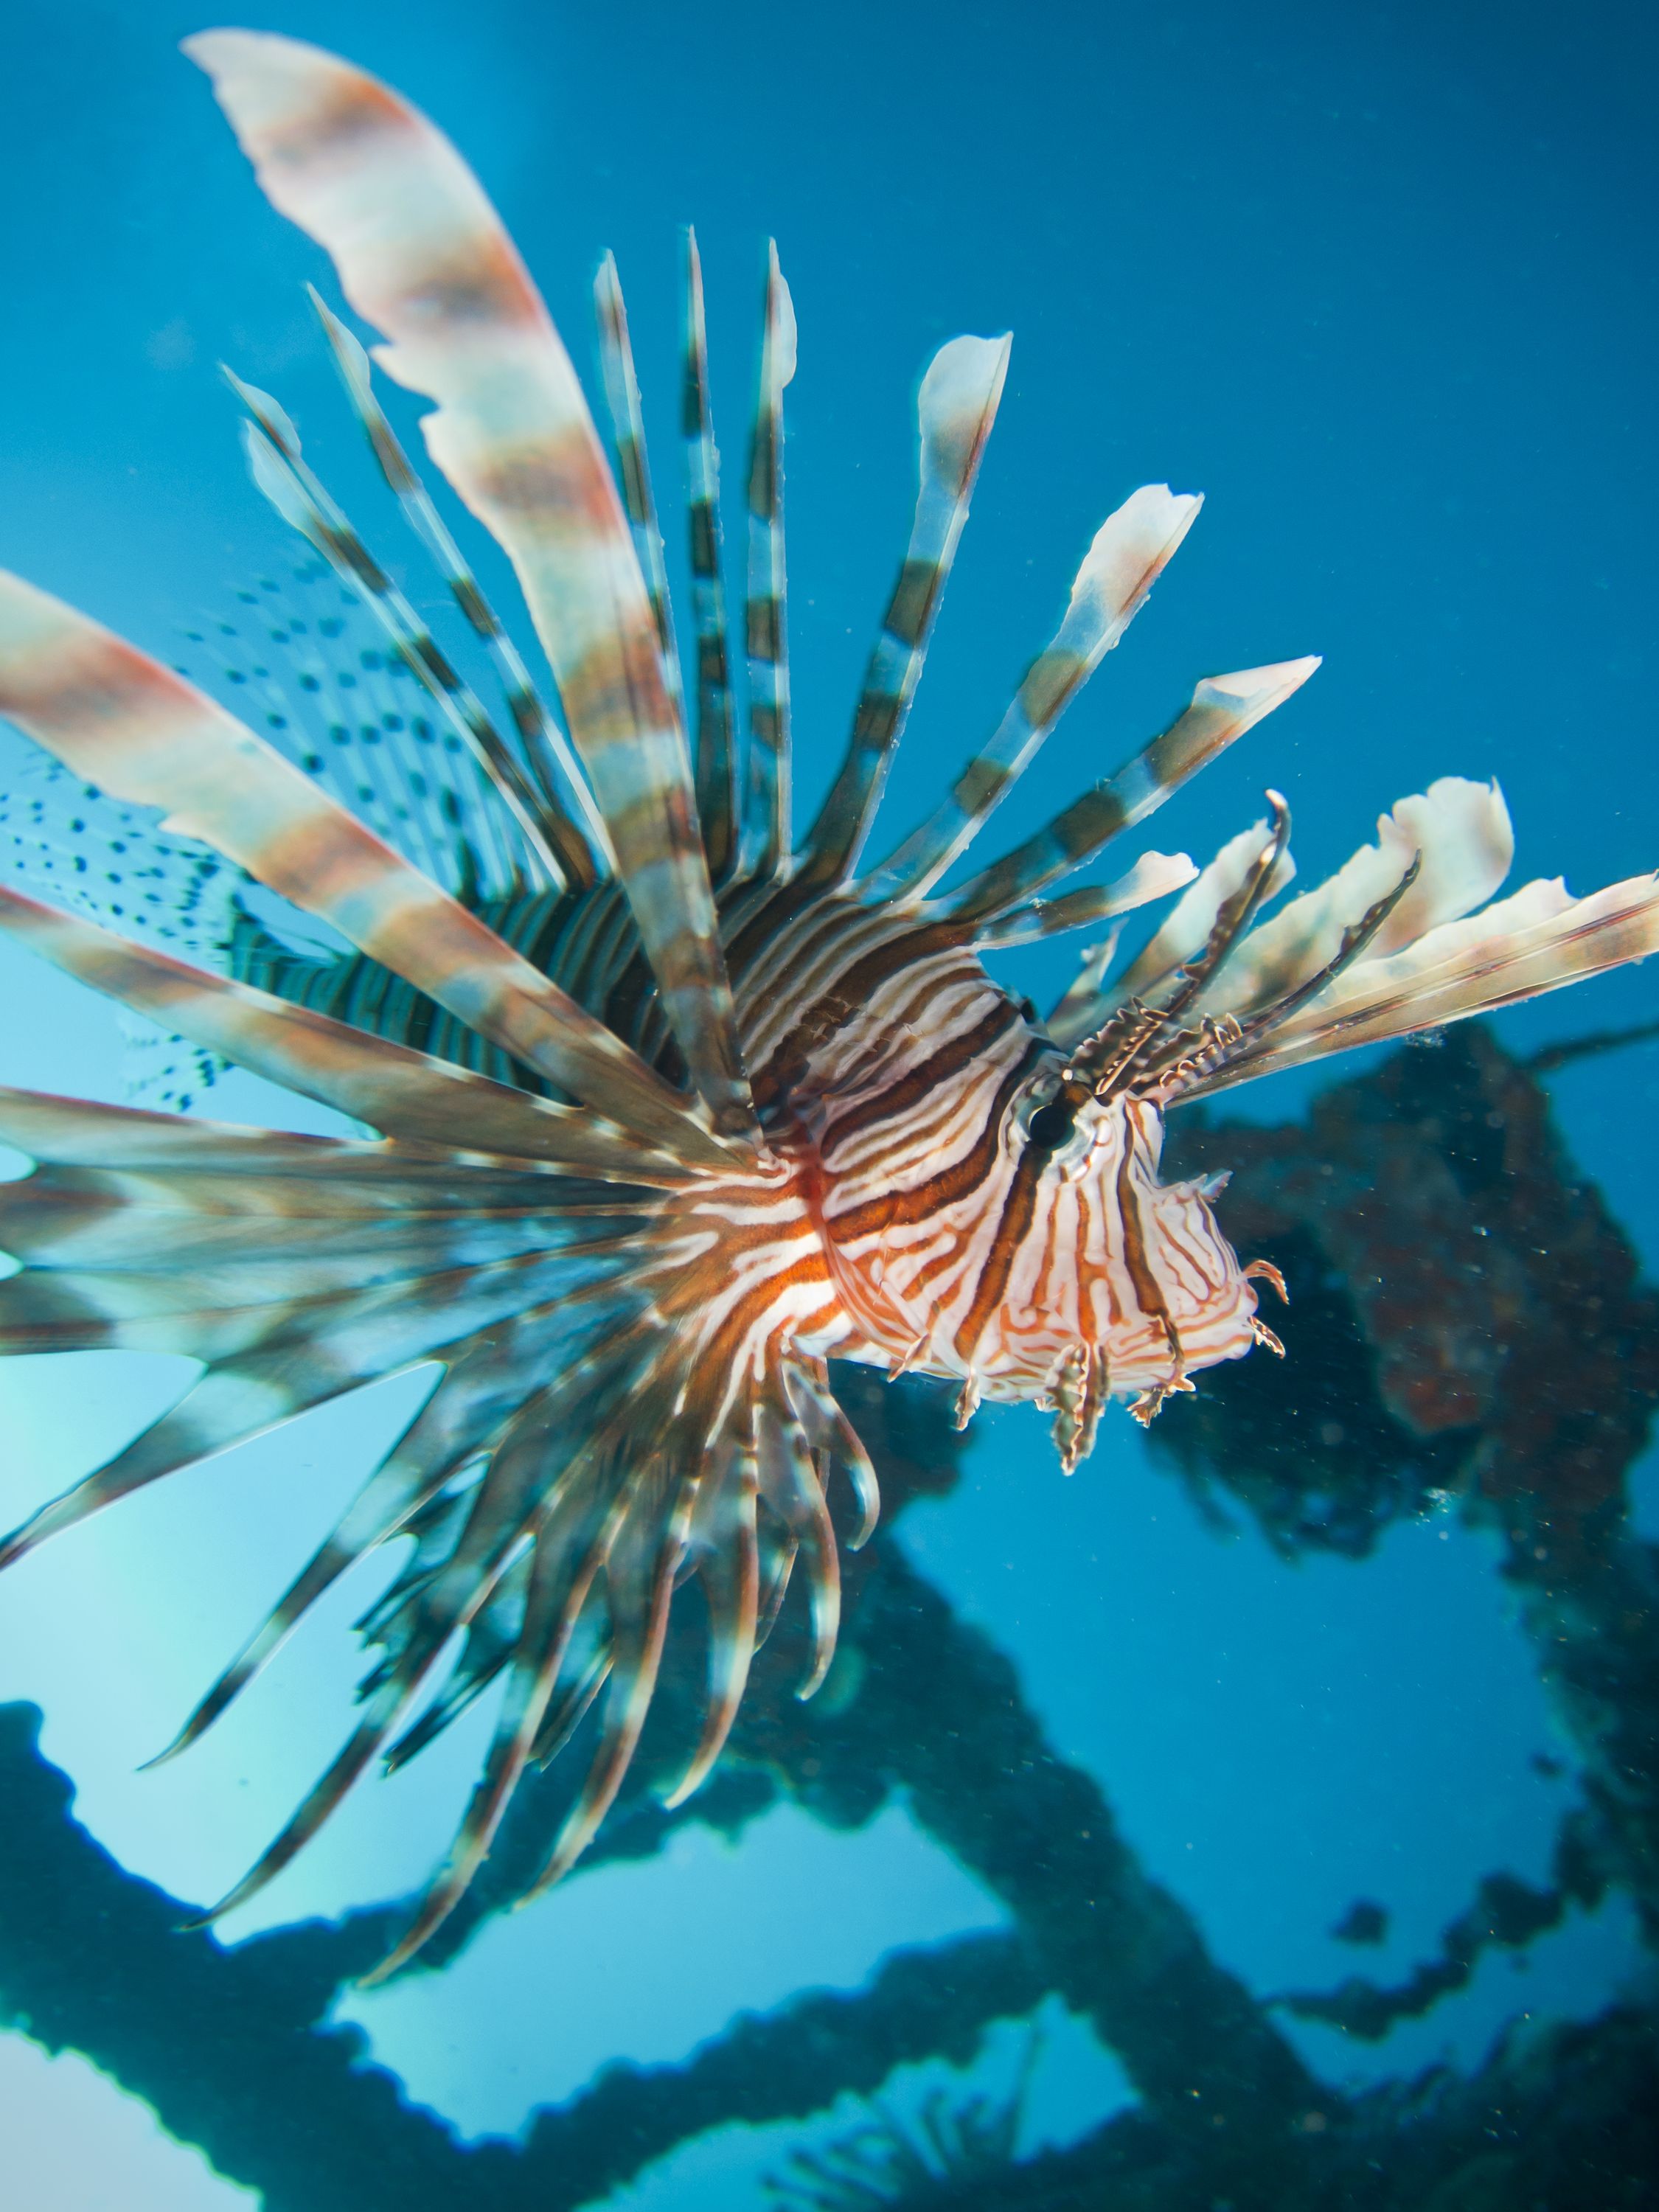 Lionfish closeup - Seaventures dive rig Sipadan